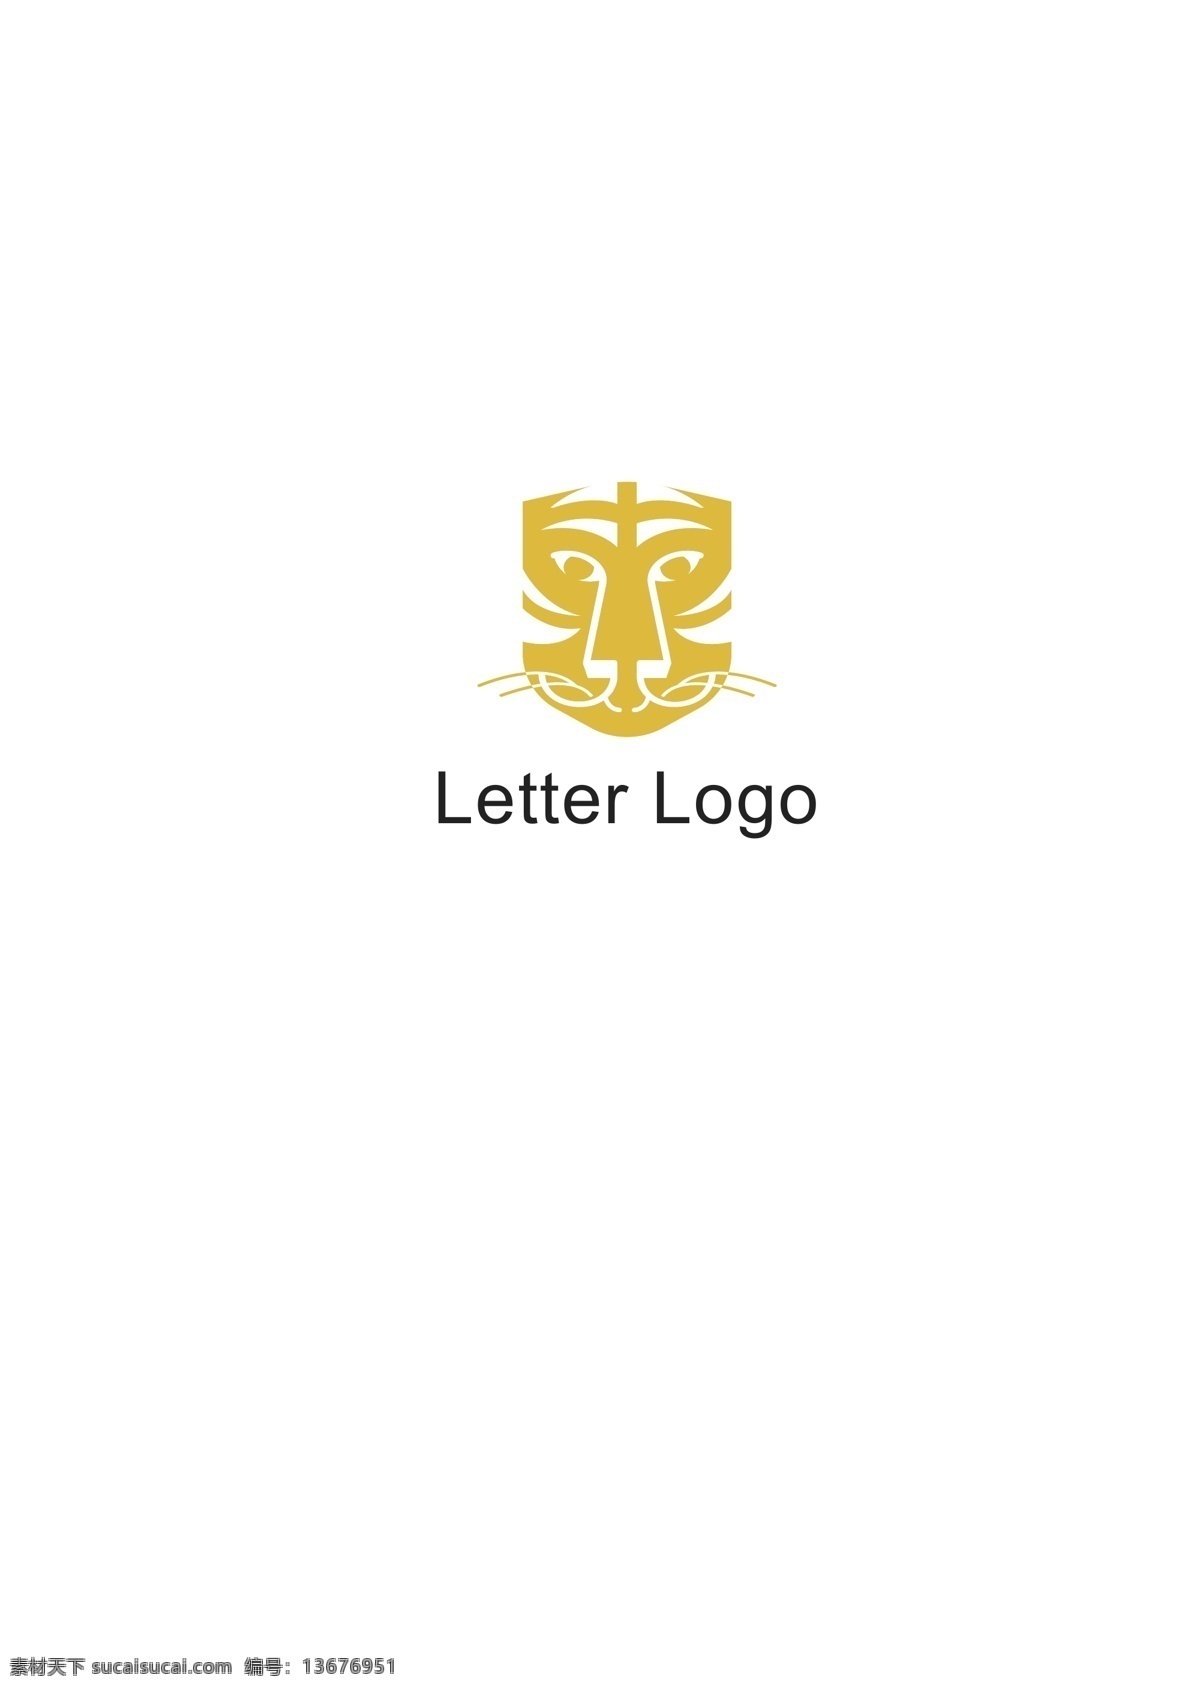 虎王 品牌 logo 老虎头像 老虎logo 简笔老虎 logo设计 标识设计 ai矢量